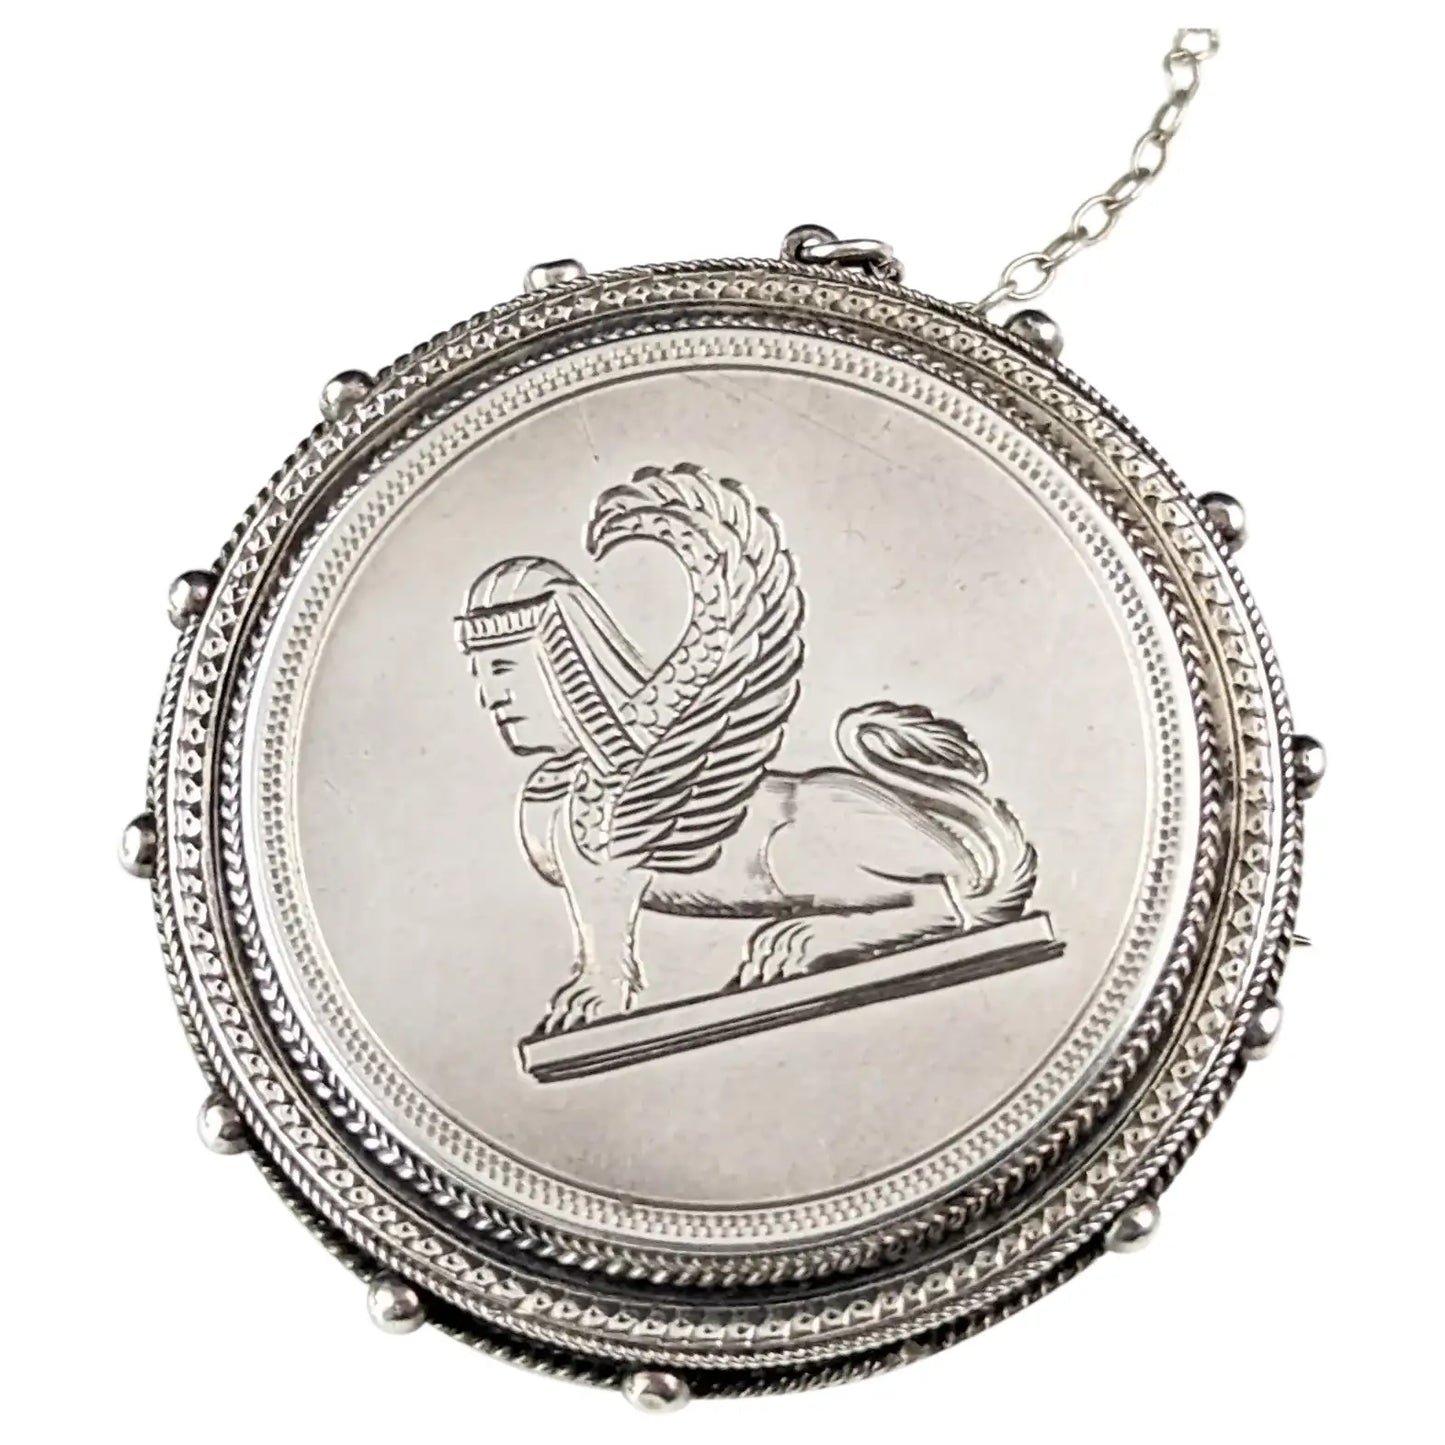 Antique Victorian Assyrian revival brooch, Sterling silver, Lamassu